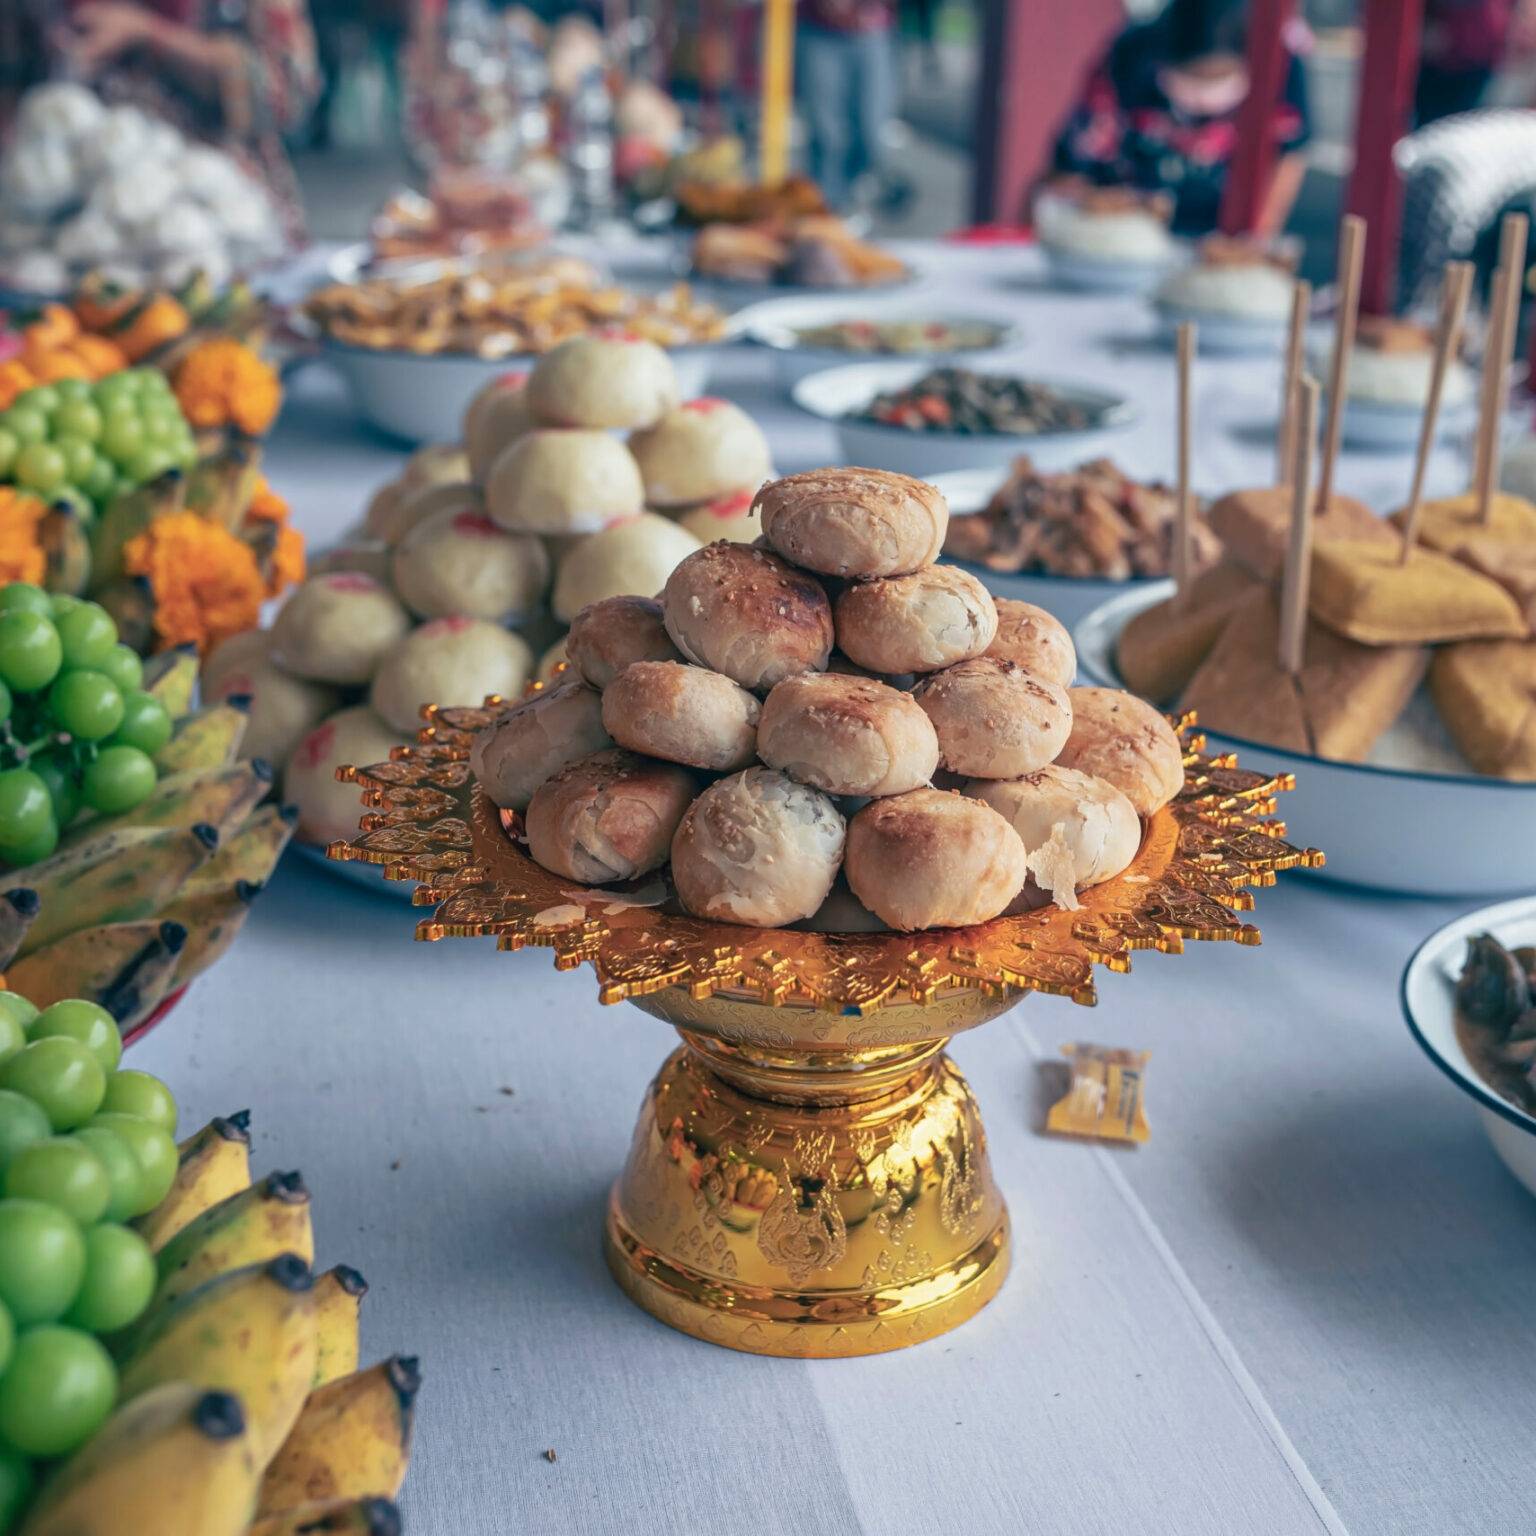 Auf einem Tisch sind zahlreiche Mahlzeiten als Opfergaben aufgestellt.